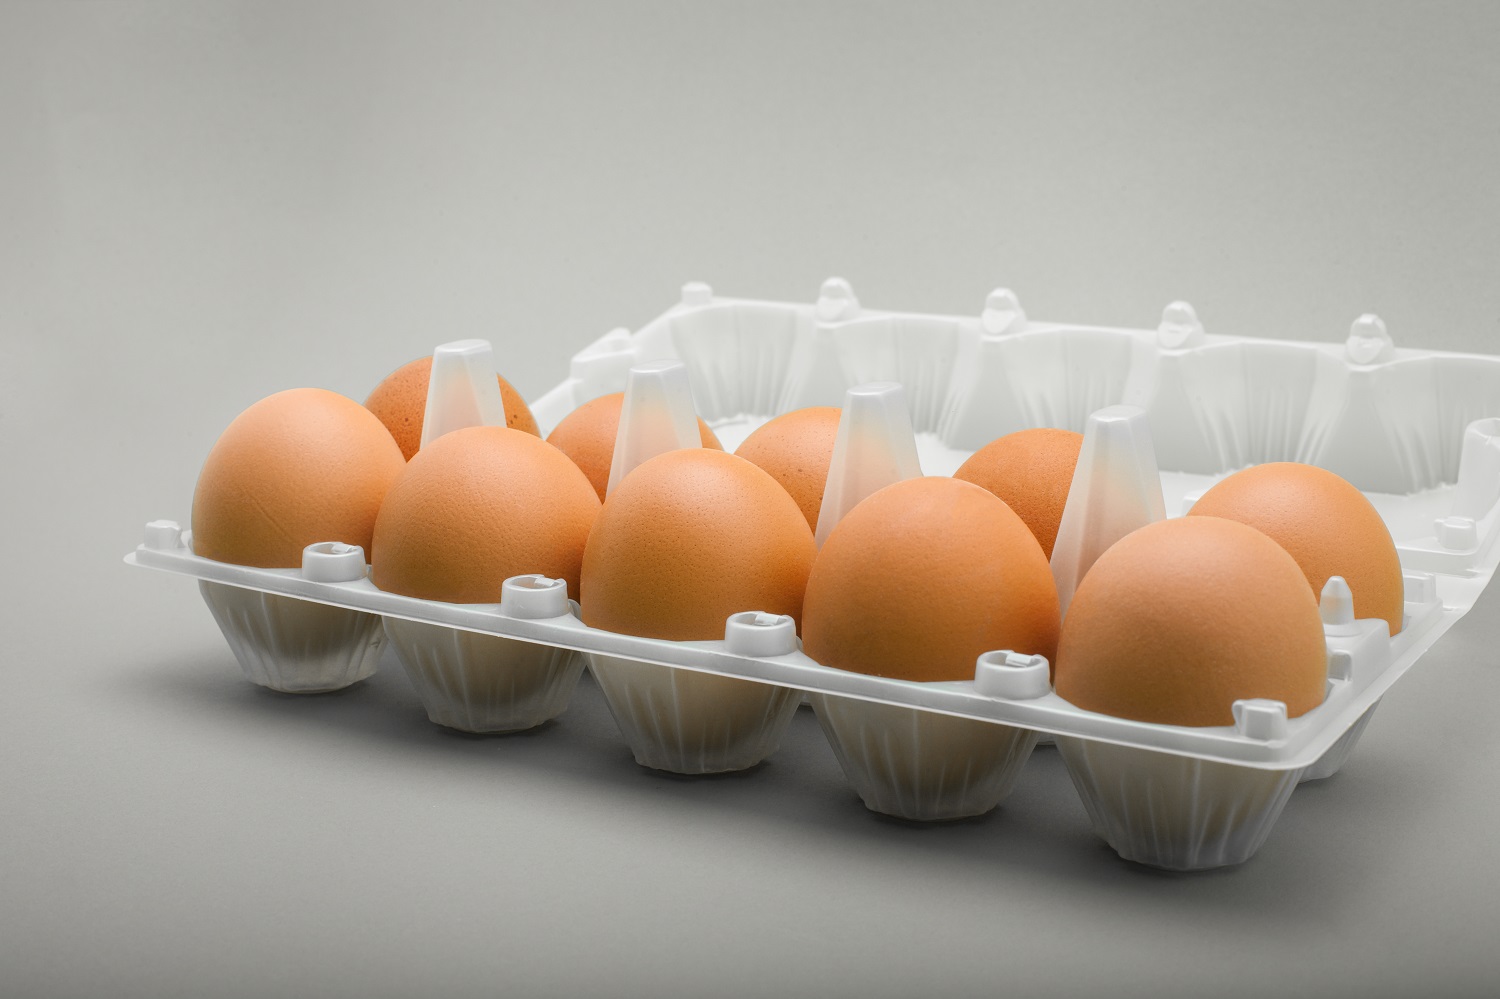 Çiftlik yumurtası ile fabrikasyon yumurtanın arasındaki fark nedir?